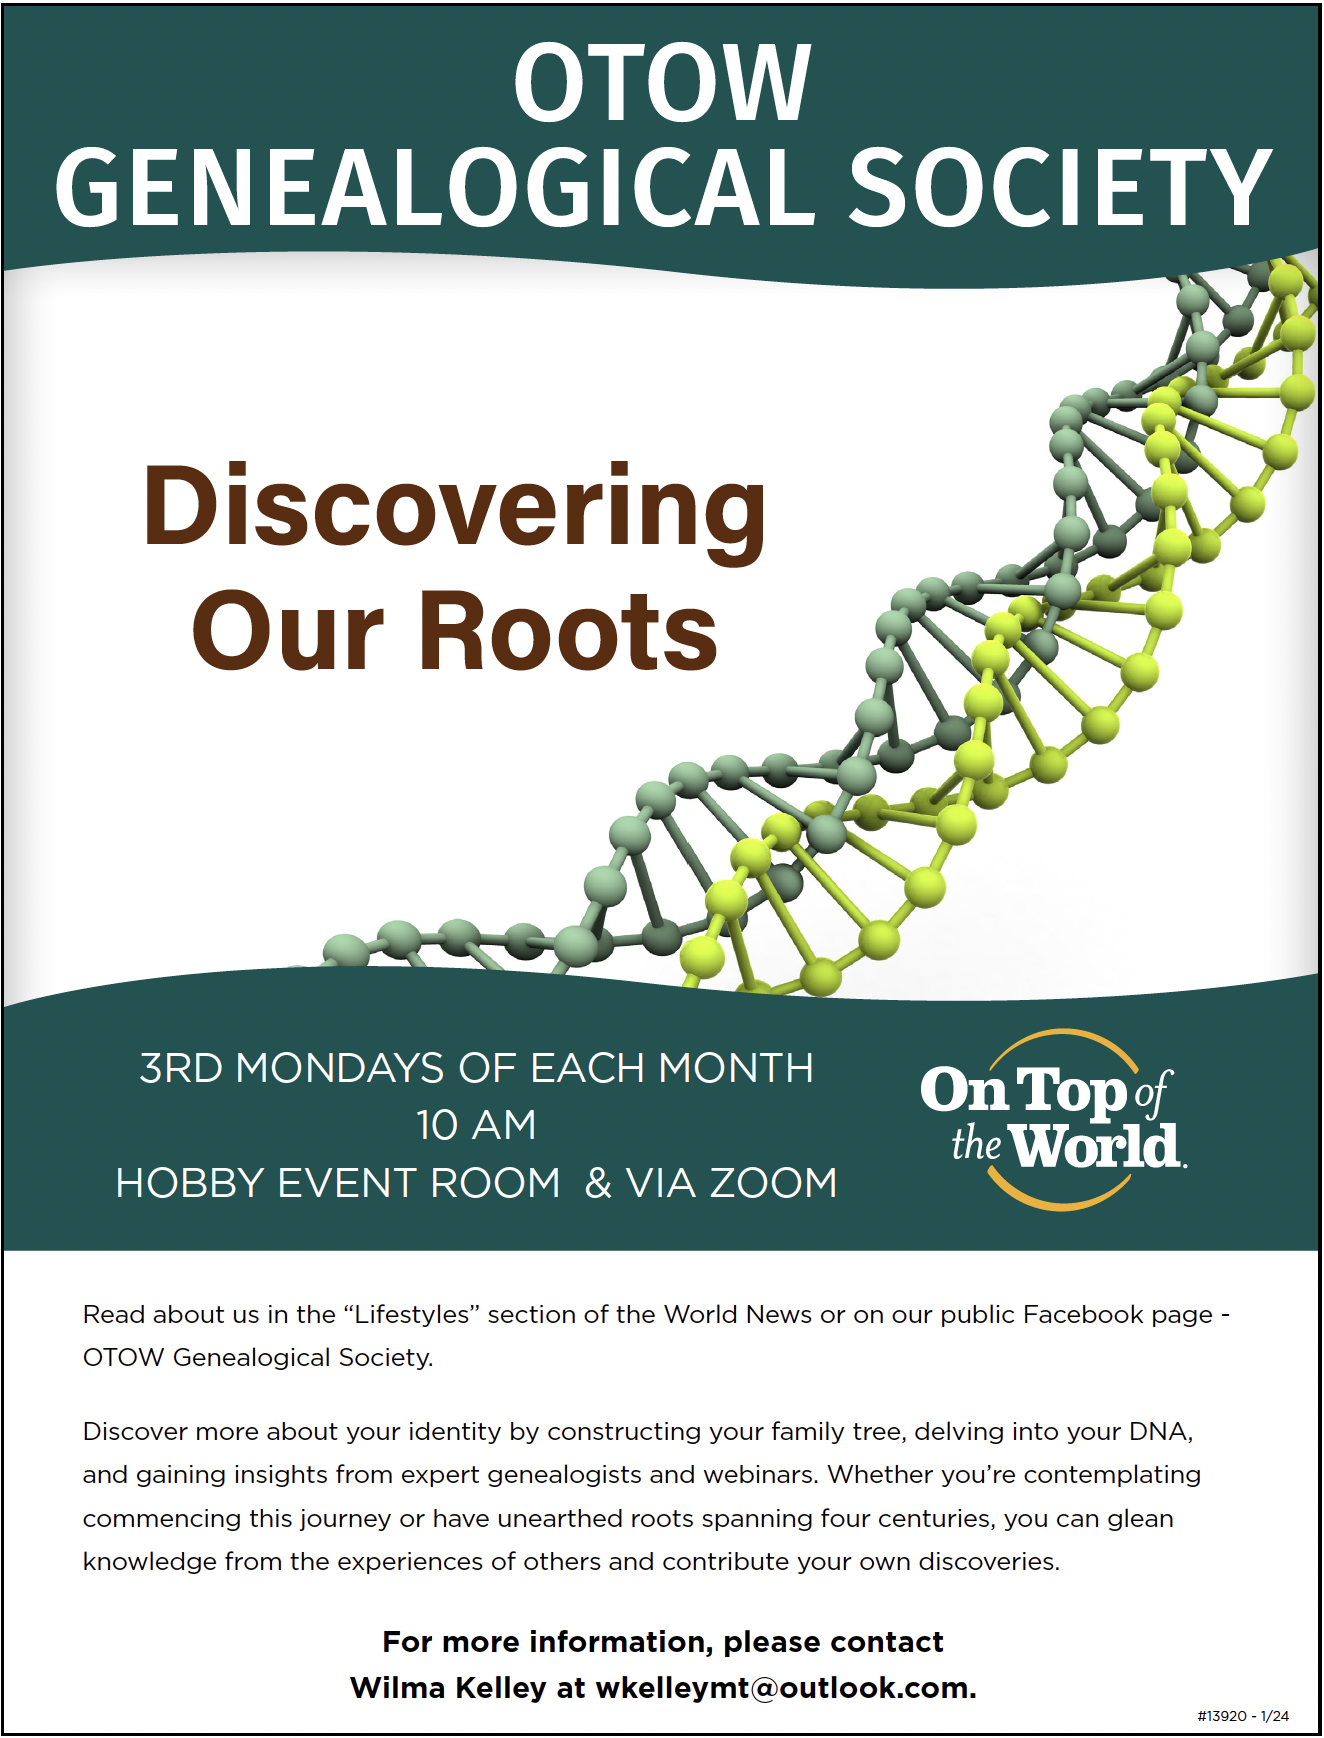 OTOW Genealogical Society